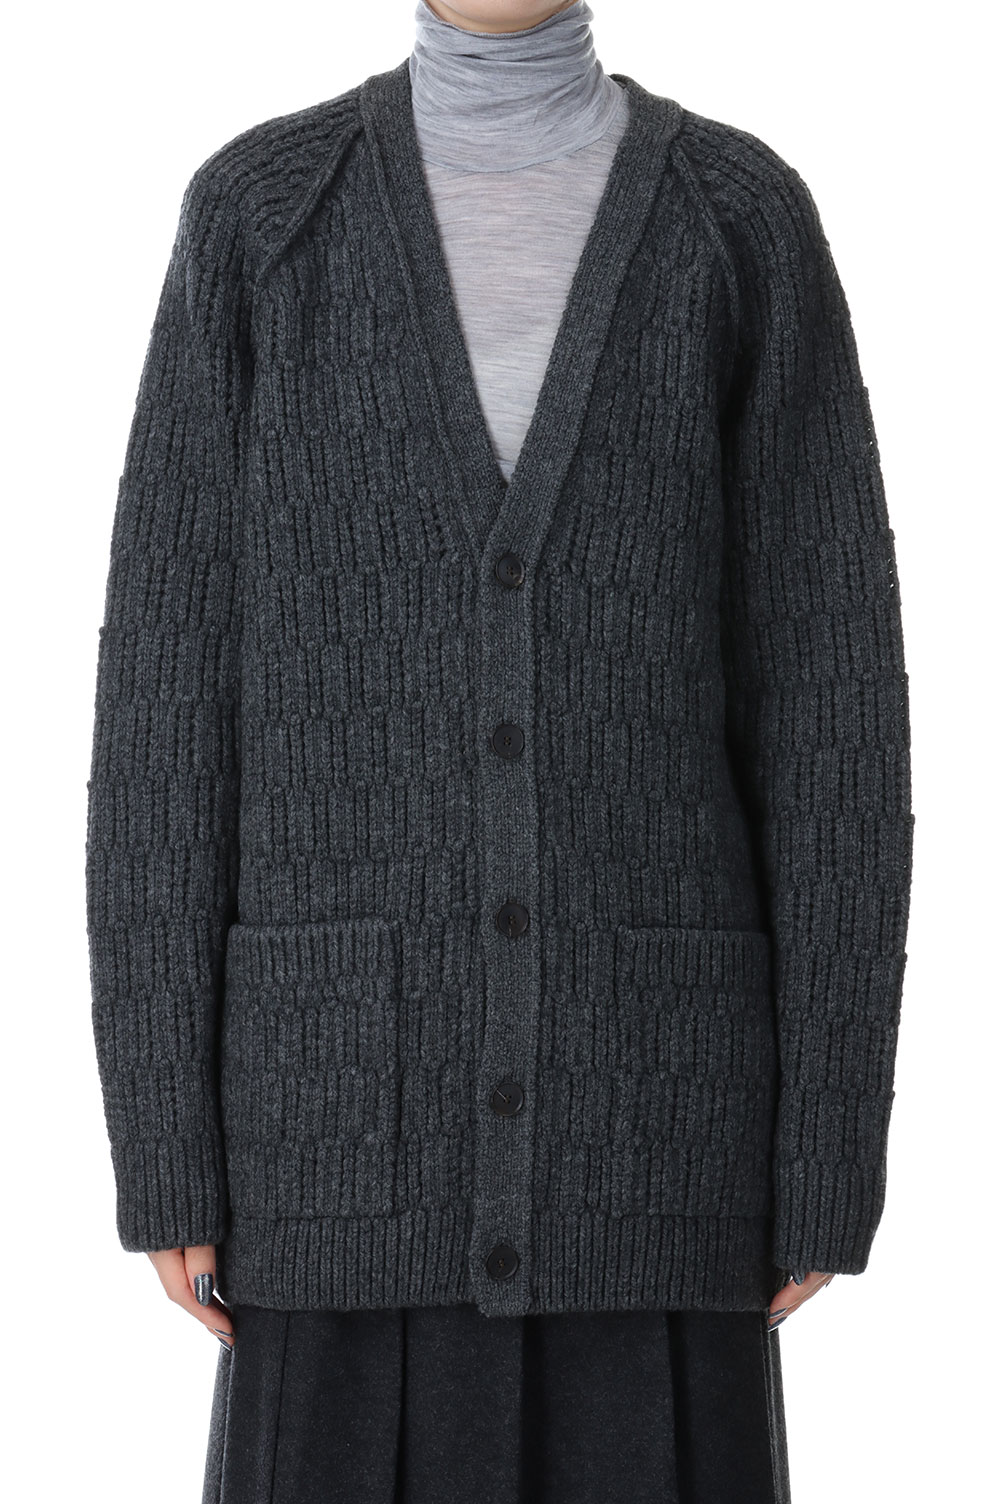 日本購入サイト ootho Wool Rib Design Knit Charcoal Grey - トップス